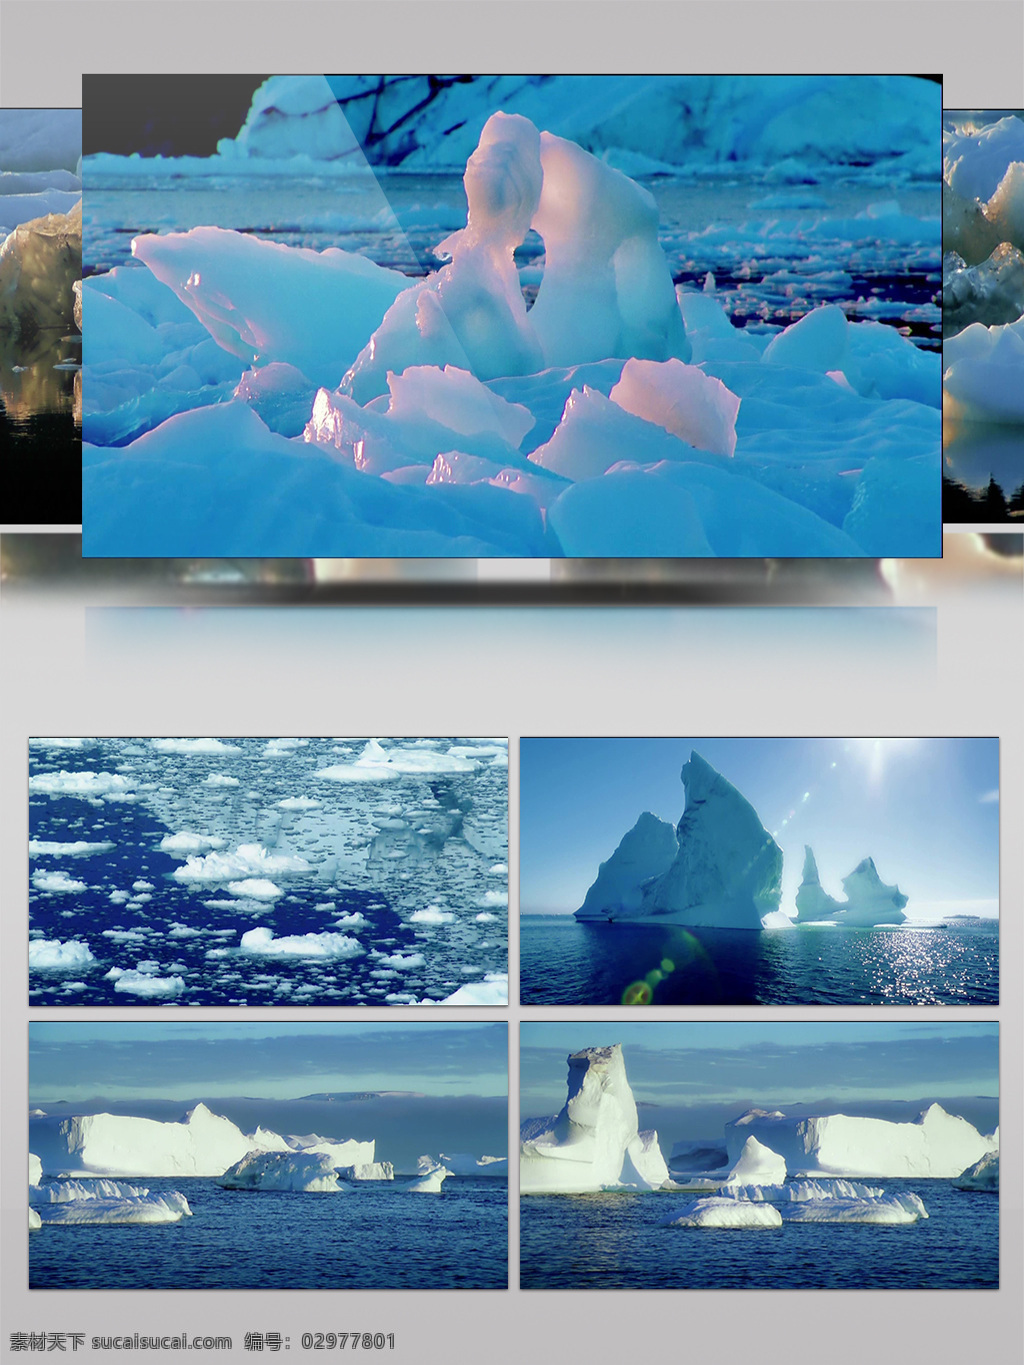 南极 冰山 冰雪 覆盖 自然界 美景 北极 冰封 冰块 冰雪美景 企鹅